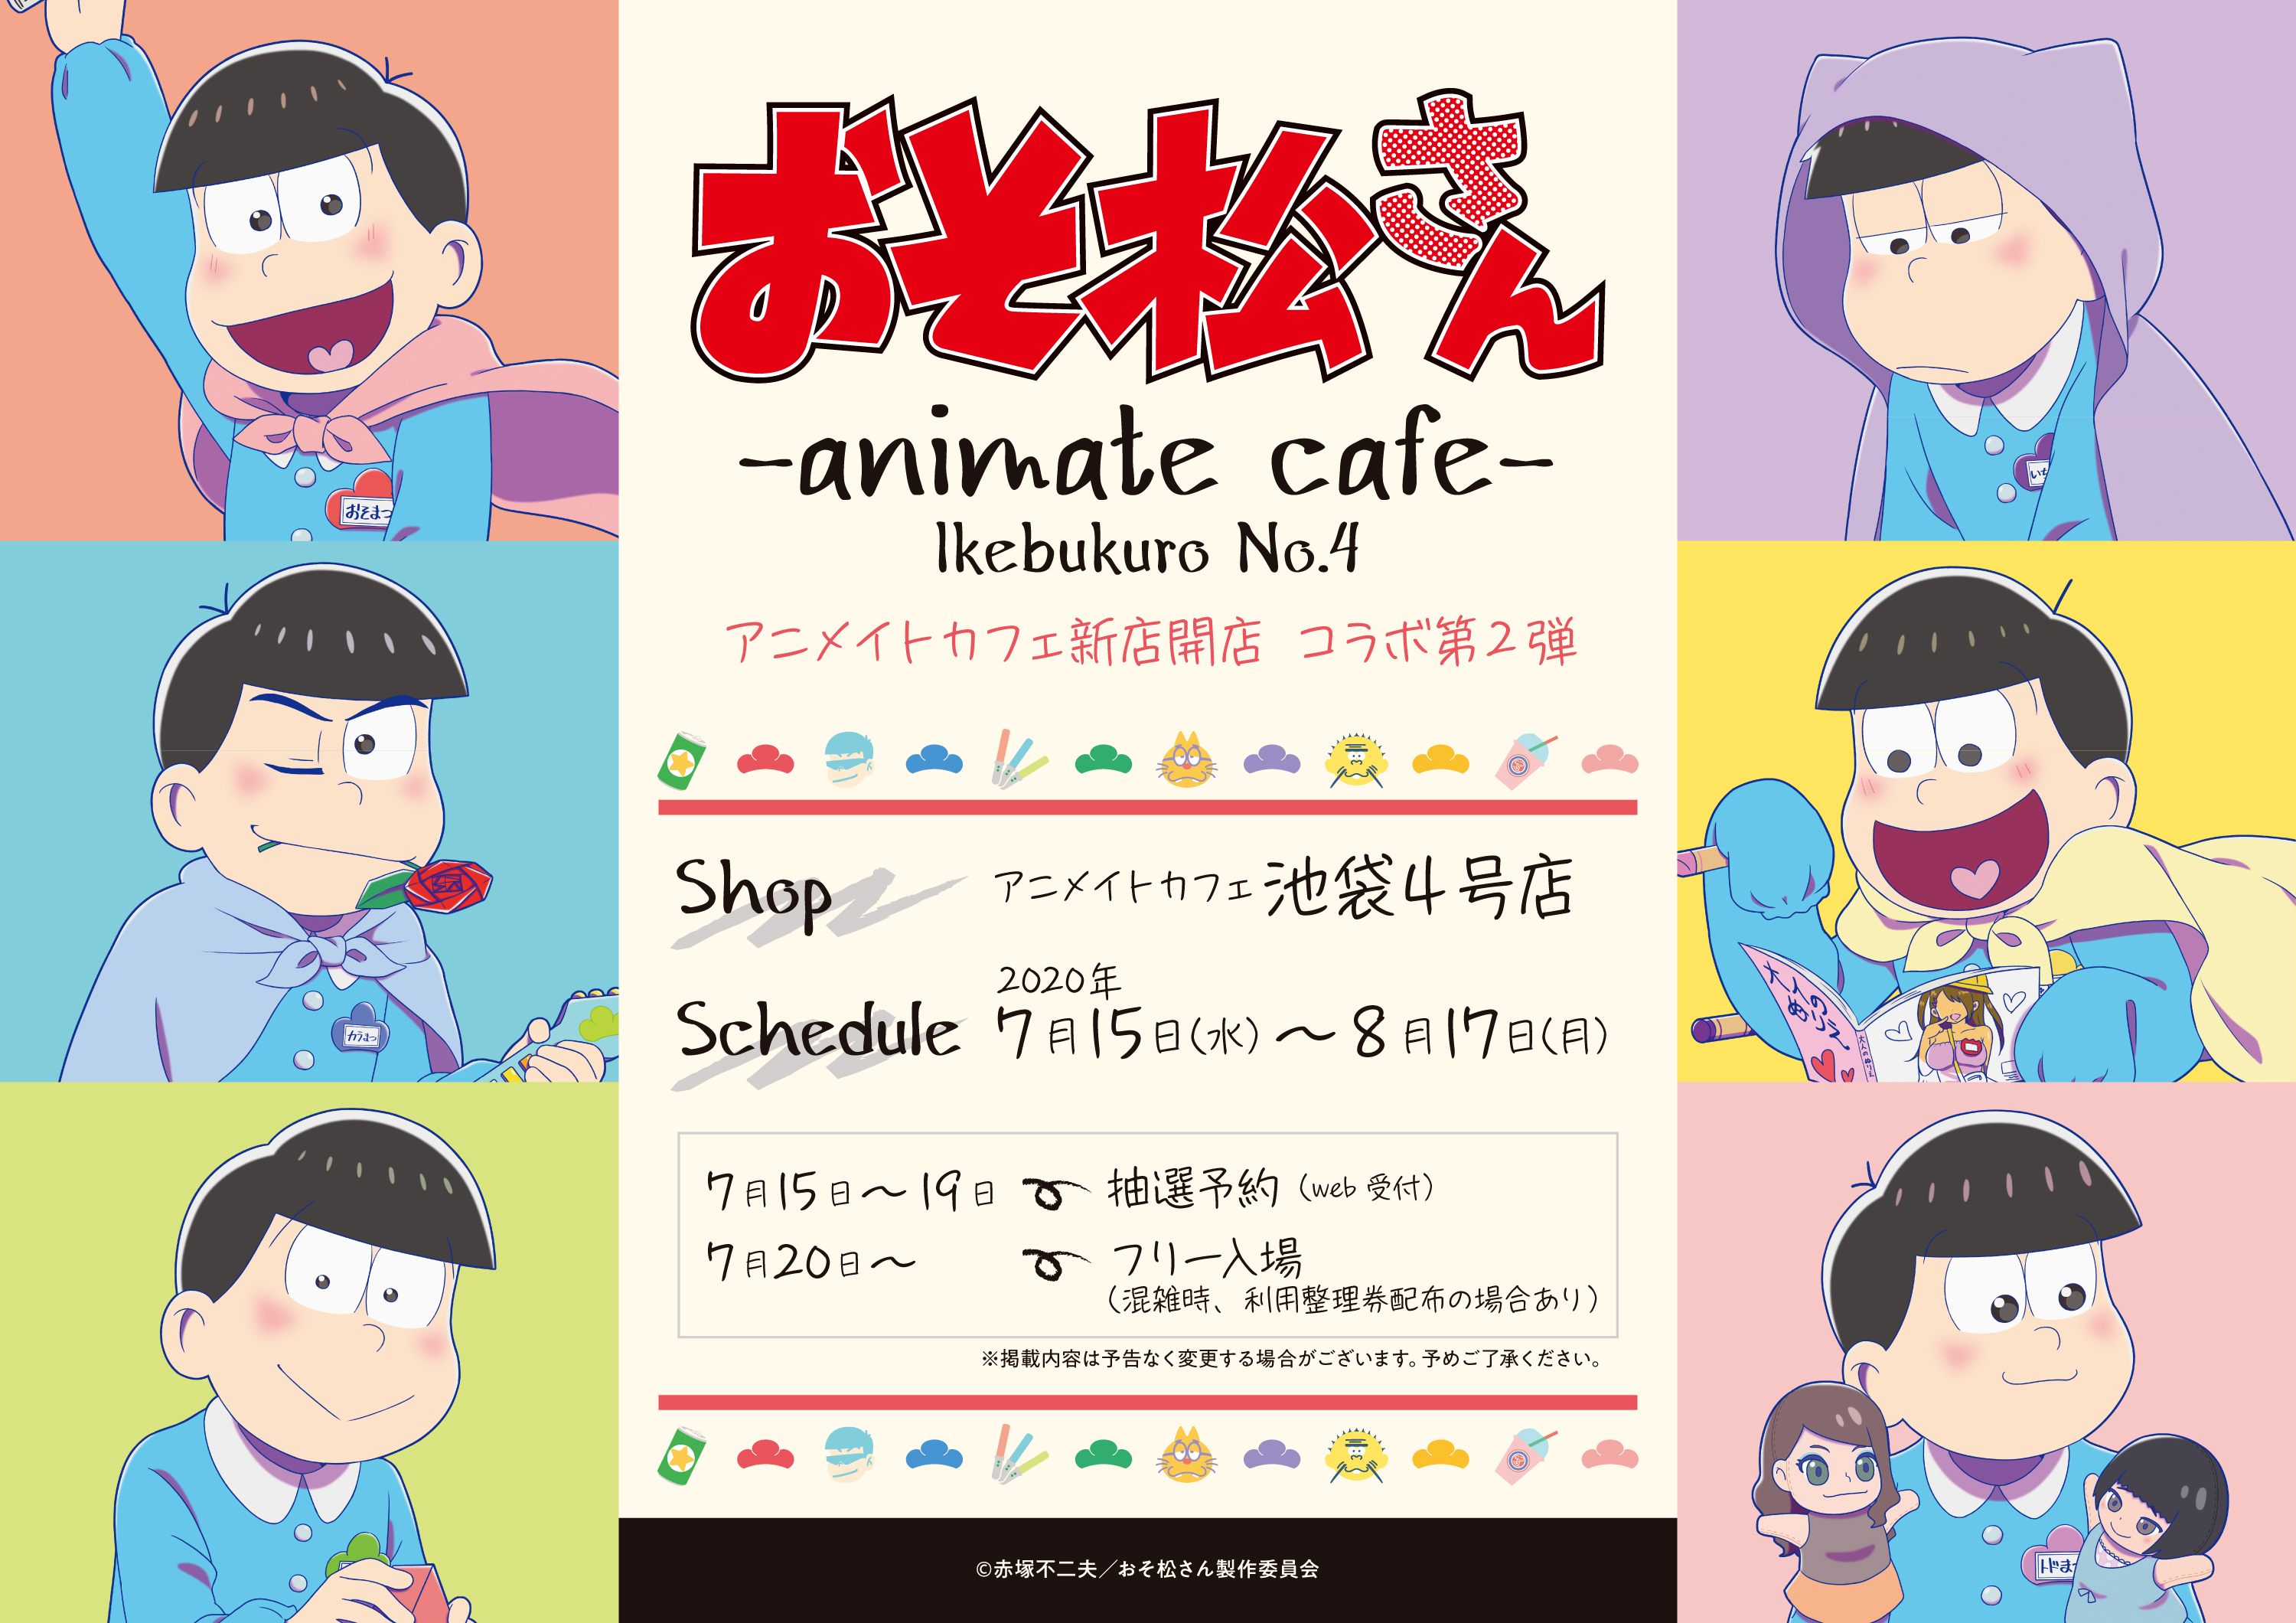 Tvアニメ おそ松さん とアニメイトカフェのコラボレーションカフェ決定 アニメイトカフェ池袋4号店で7月15日より開催 株式会社アニメイトホールディングスのプレスリリース